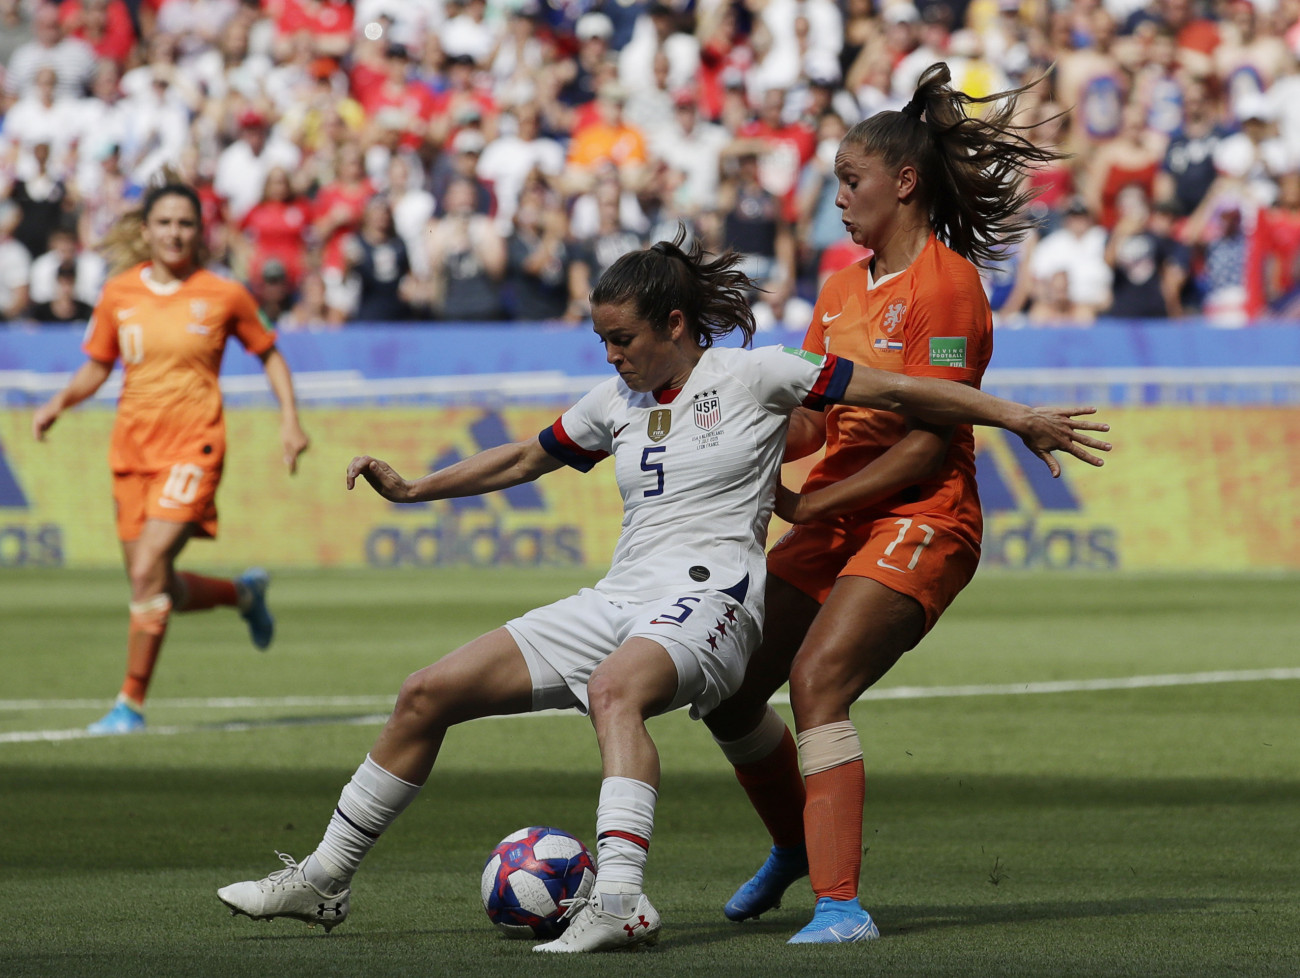 Décines-Charpieu, 2019. július 7.
A holland Lieke Martens (j) és az amerikai Kelley O'Hara a női labdarúgó-világbajnokság döntőjében játszott Hollandia - Egyesült Államok mérkőzésen a Lyon melletti Décines-Charpieu-ben 2019. július 7-én.
MTI/AP/Alessandra Tarantino